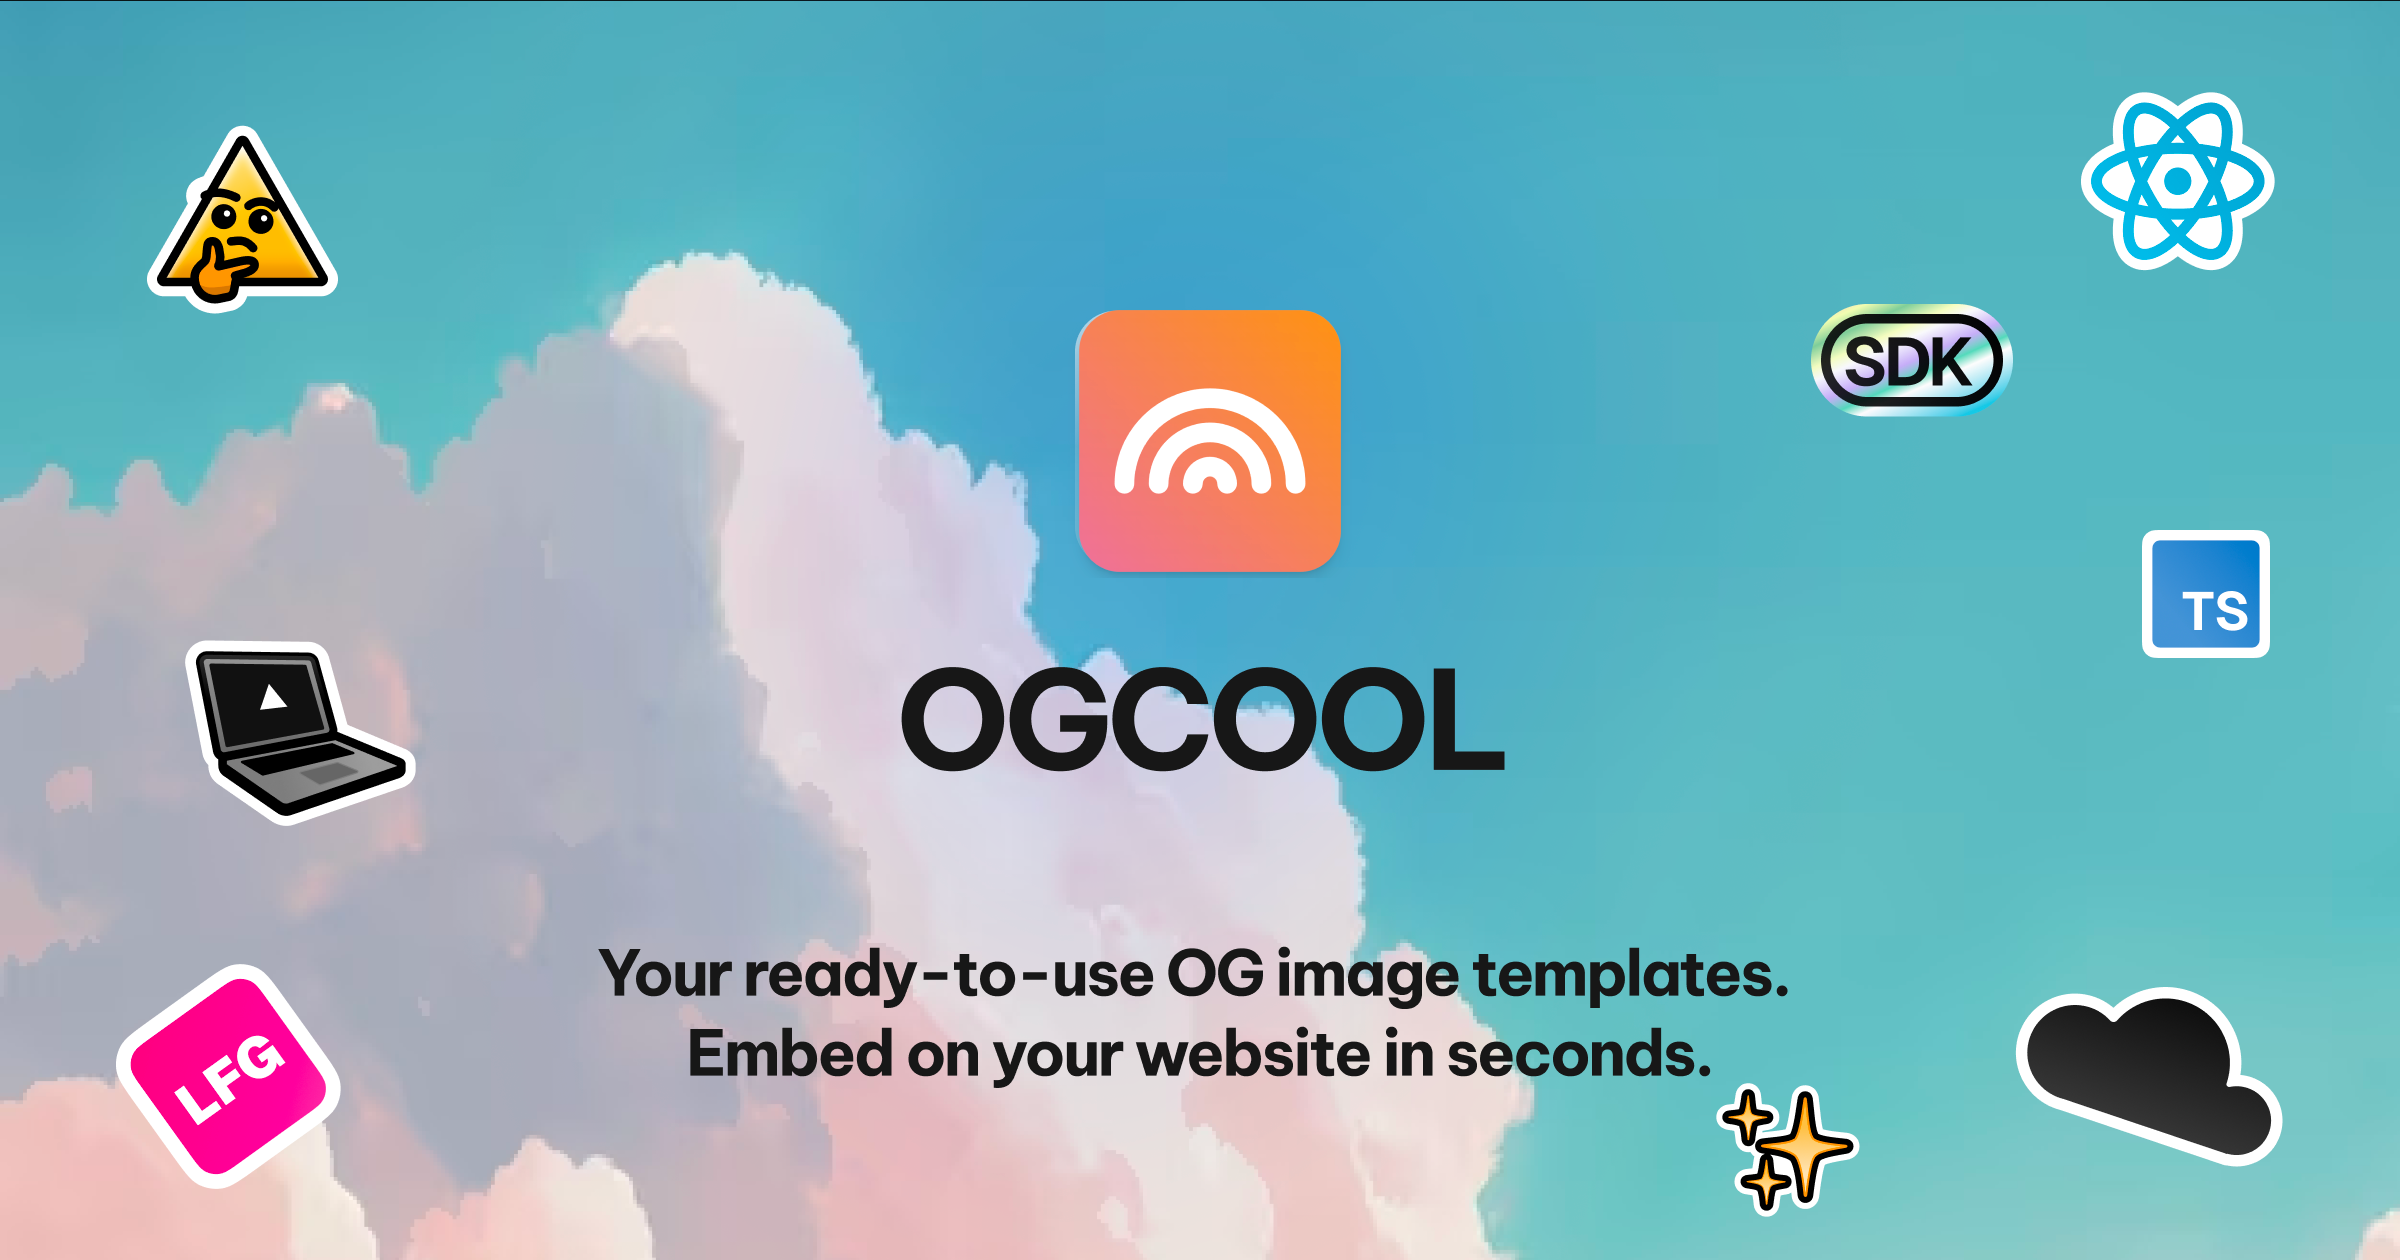 ogcool.vercel.app image